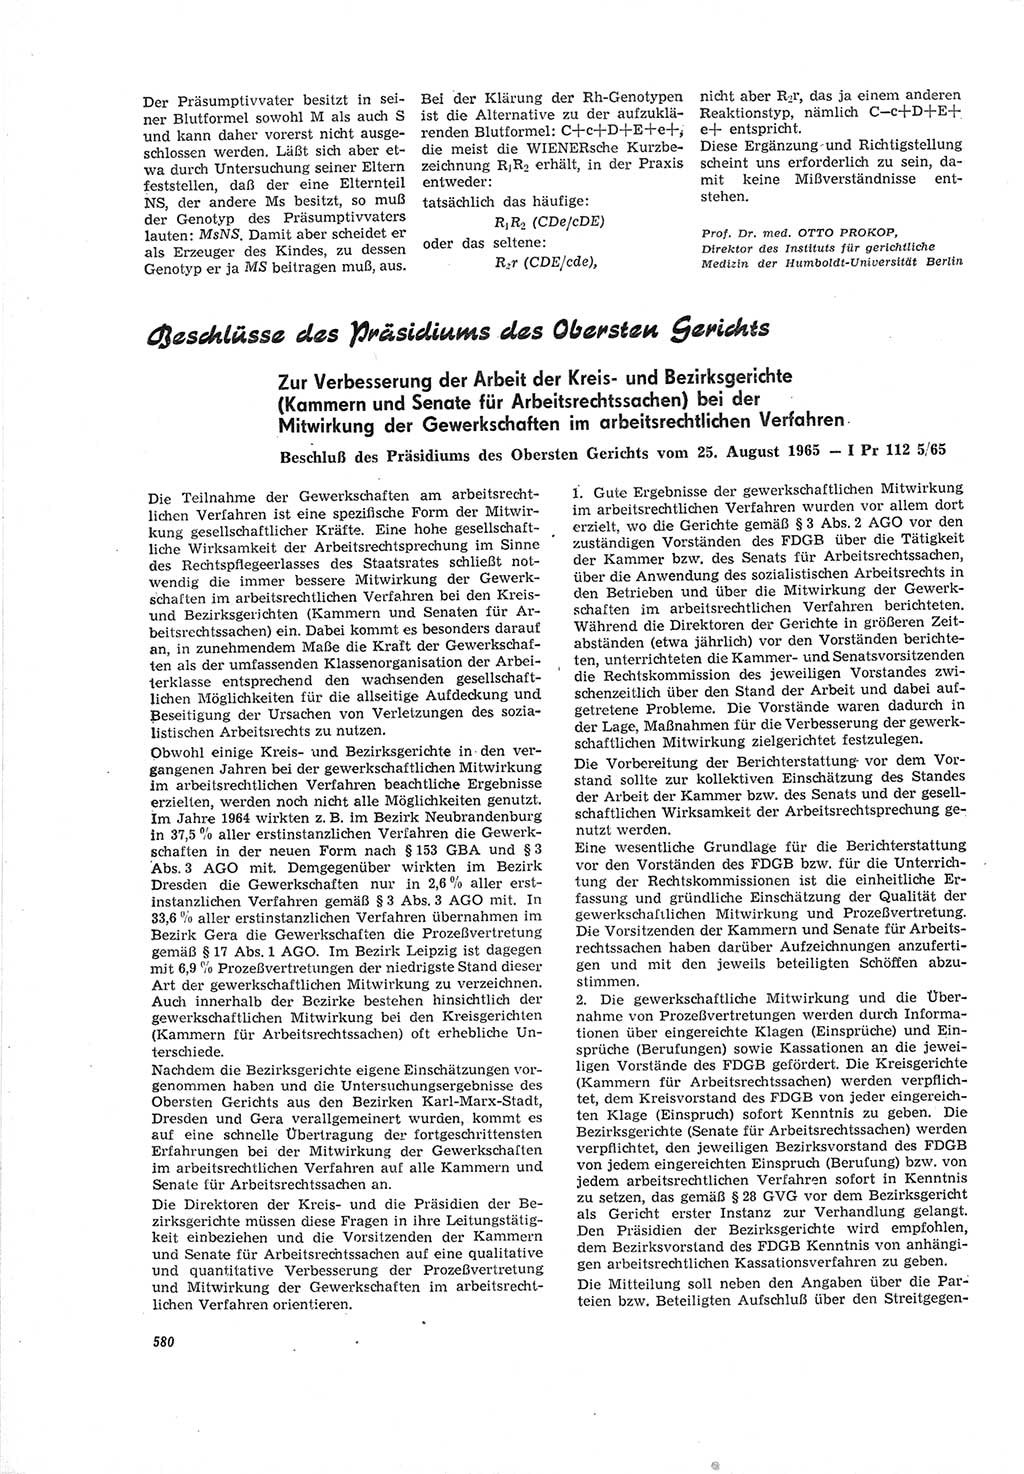 Neue Justiz (NJ), Zeitschrift für Recht und Rechtswissenschaft [Deutsche Demokratische Republik (DDR)], 19. Jahrgang 1965, Seite 580 (NJ DDR 1965, S. 580)